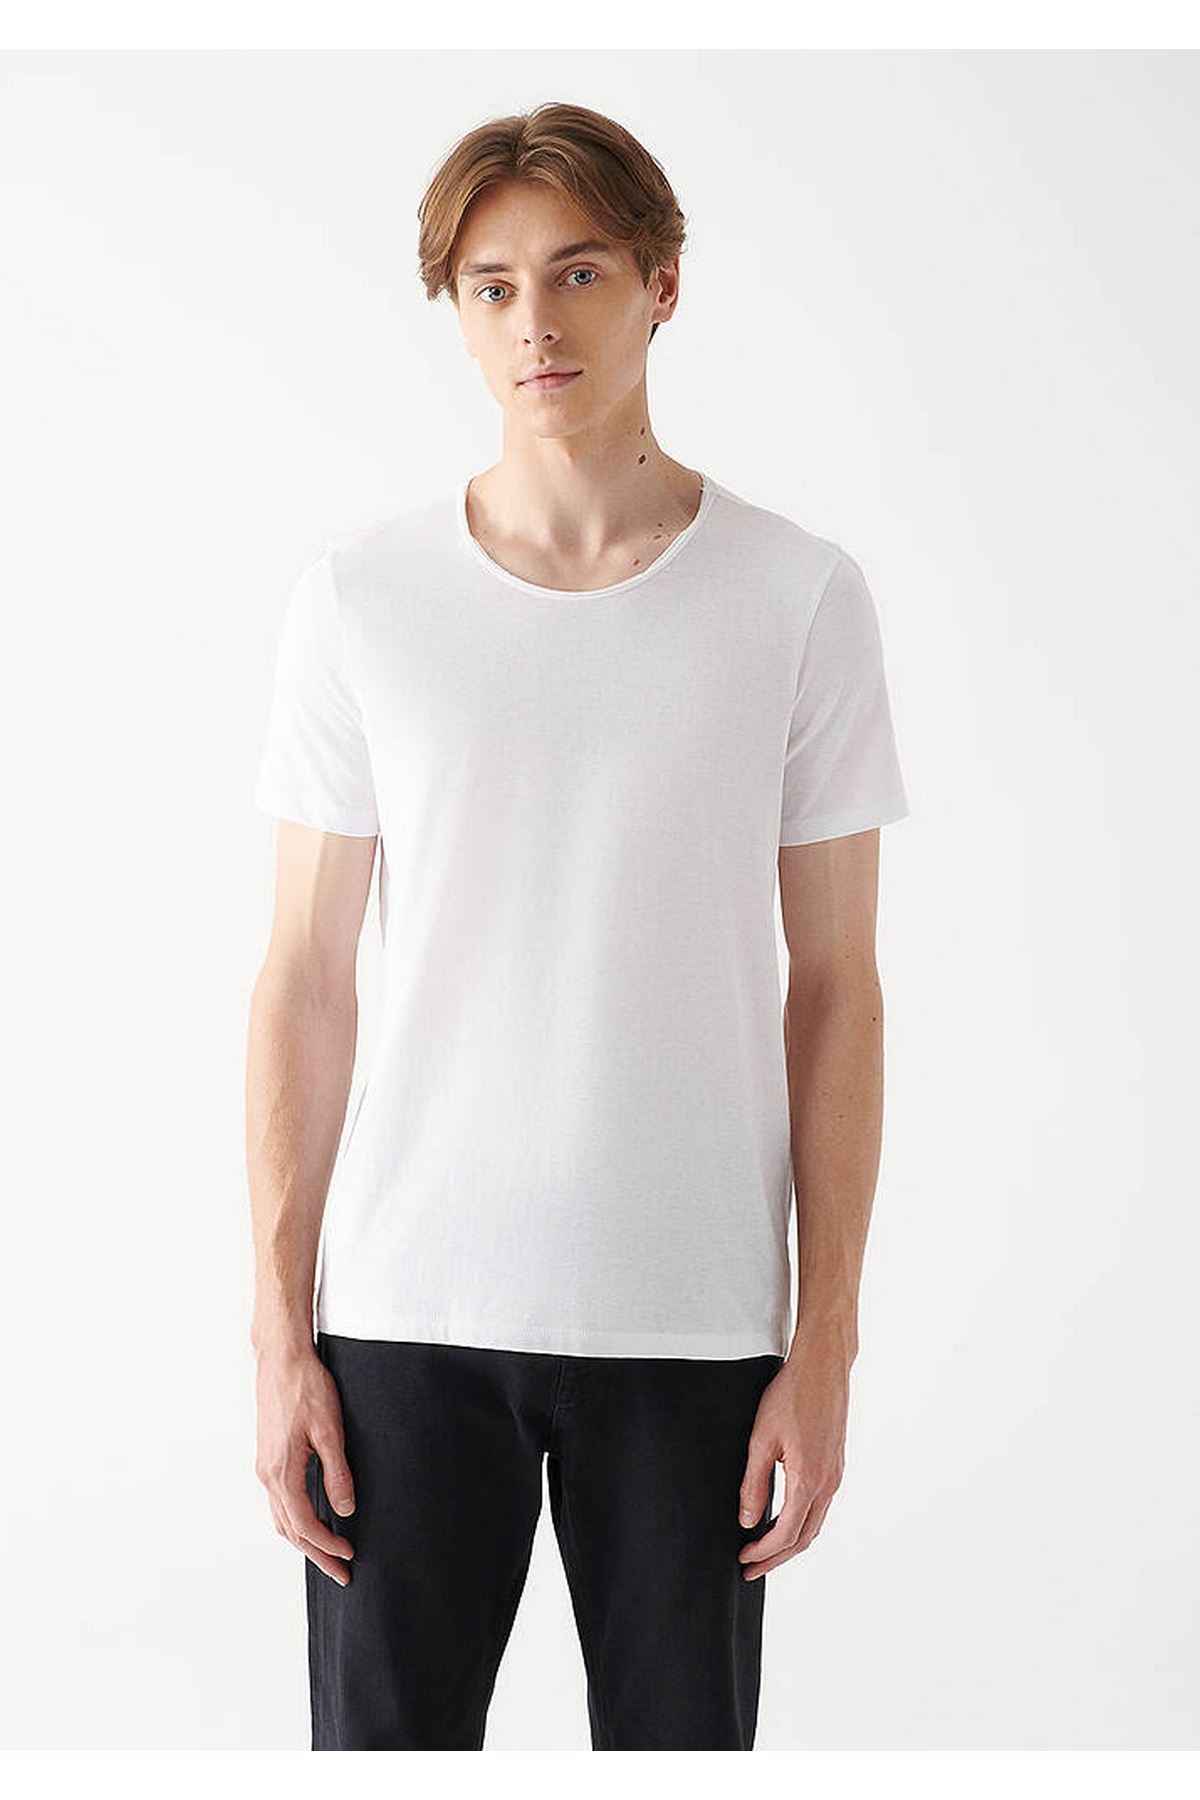 Erkek Beyaz Tişört - M064019-620